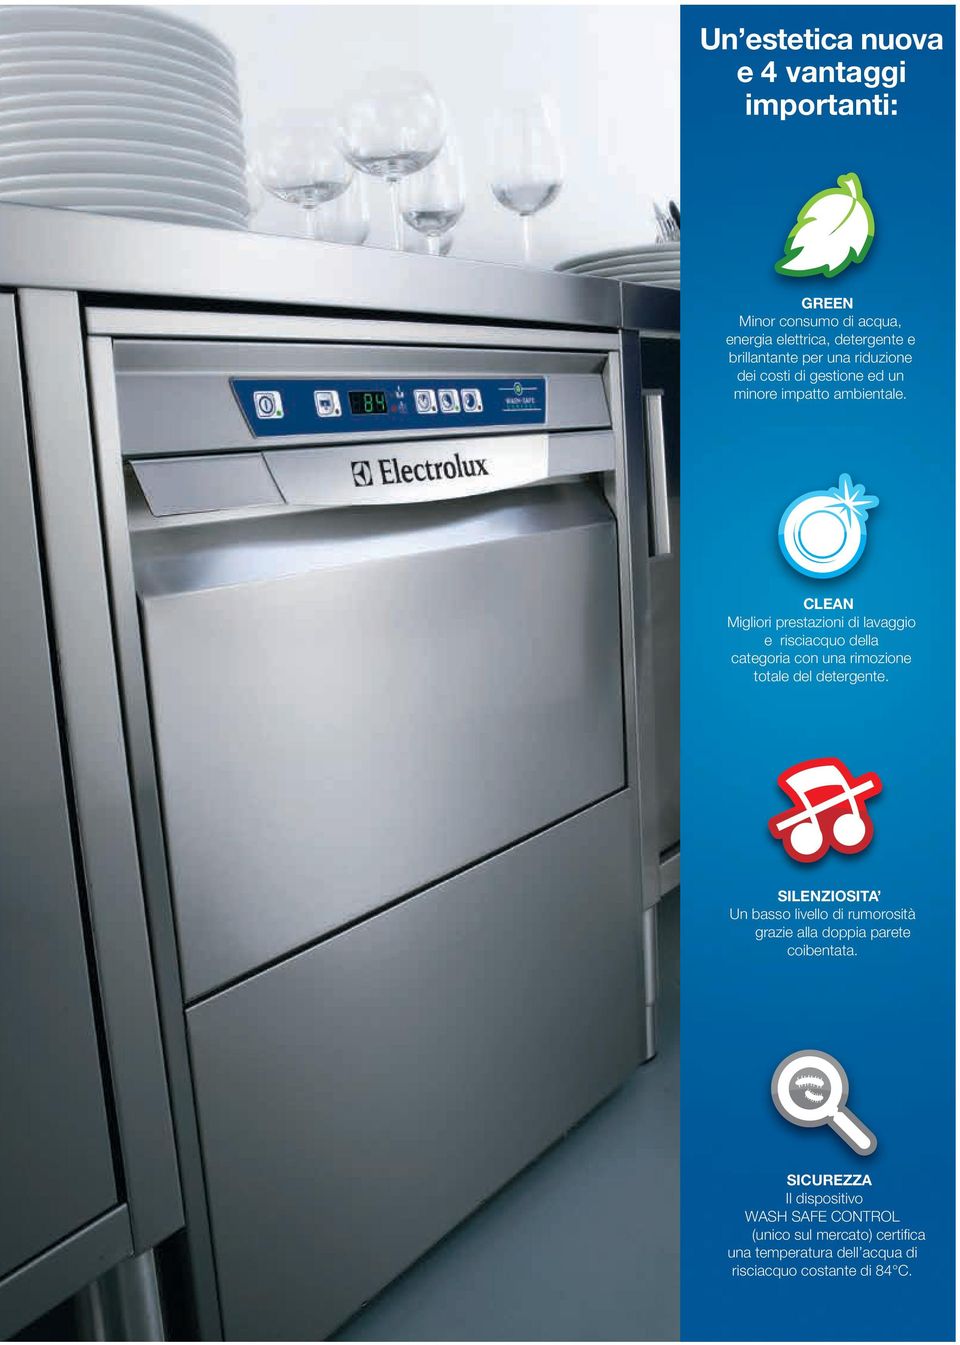 CLEAN Migliori prestazioni di lavaggio e risciacquo della categoria con una rimozione totale del detergente.